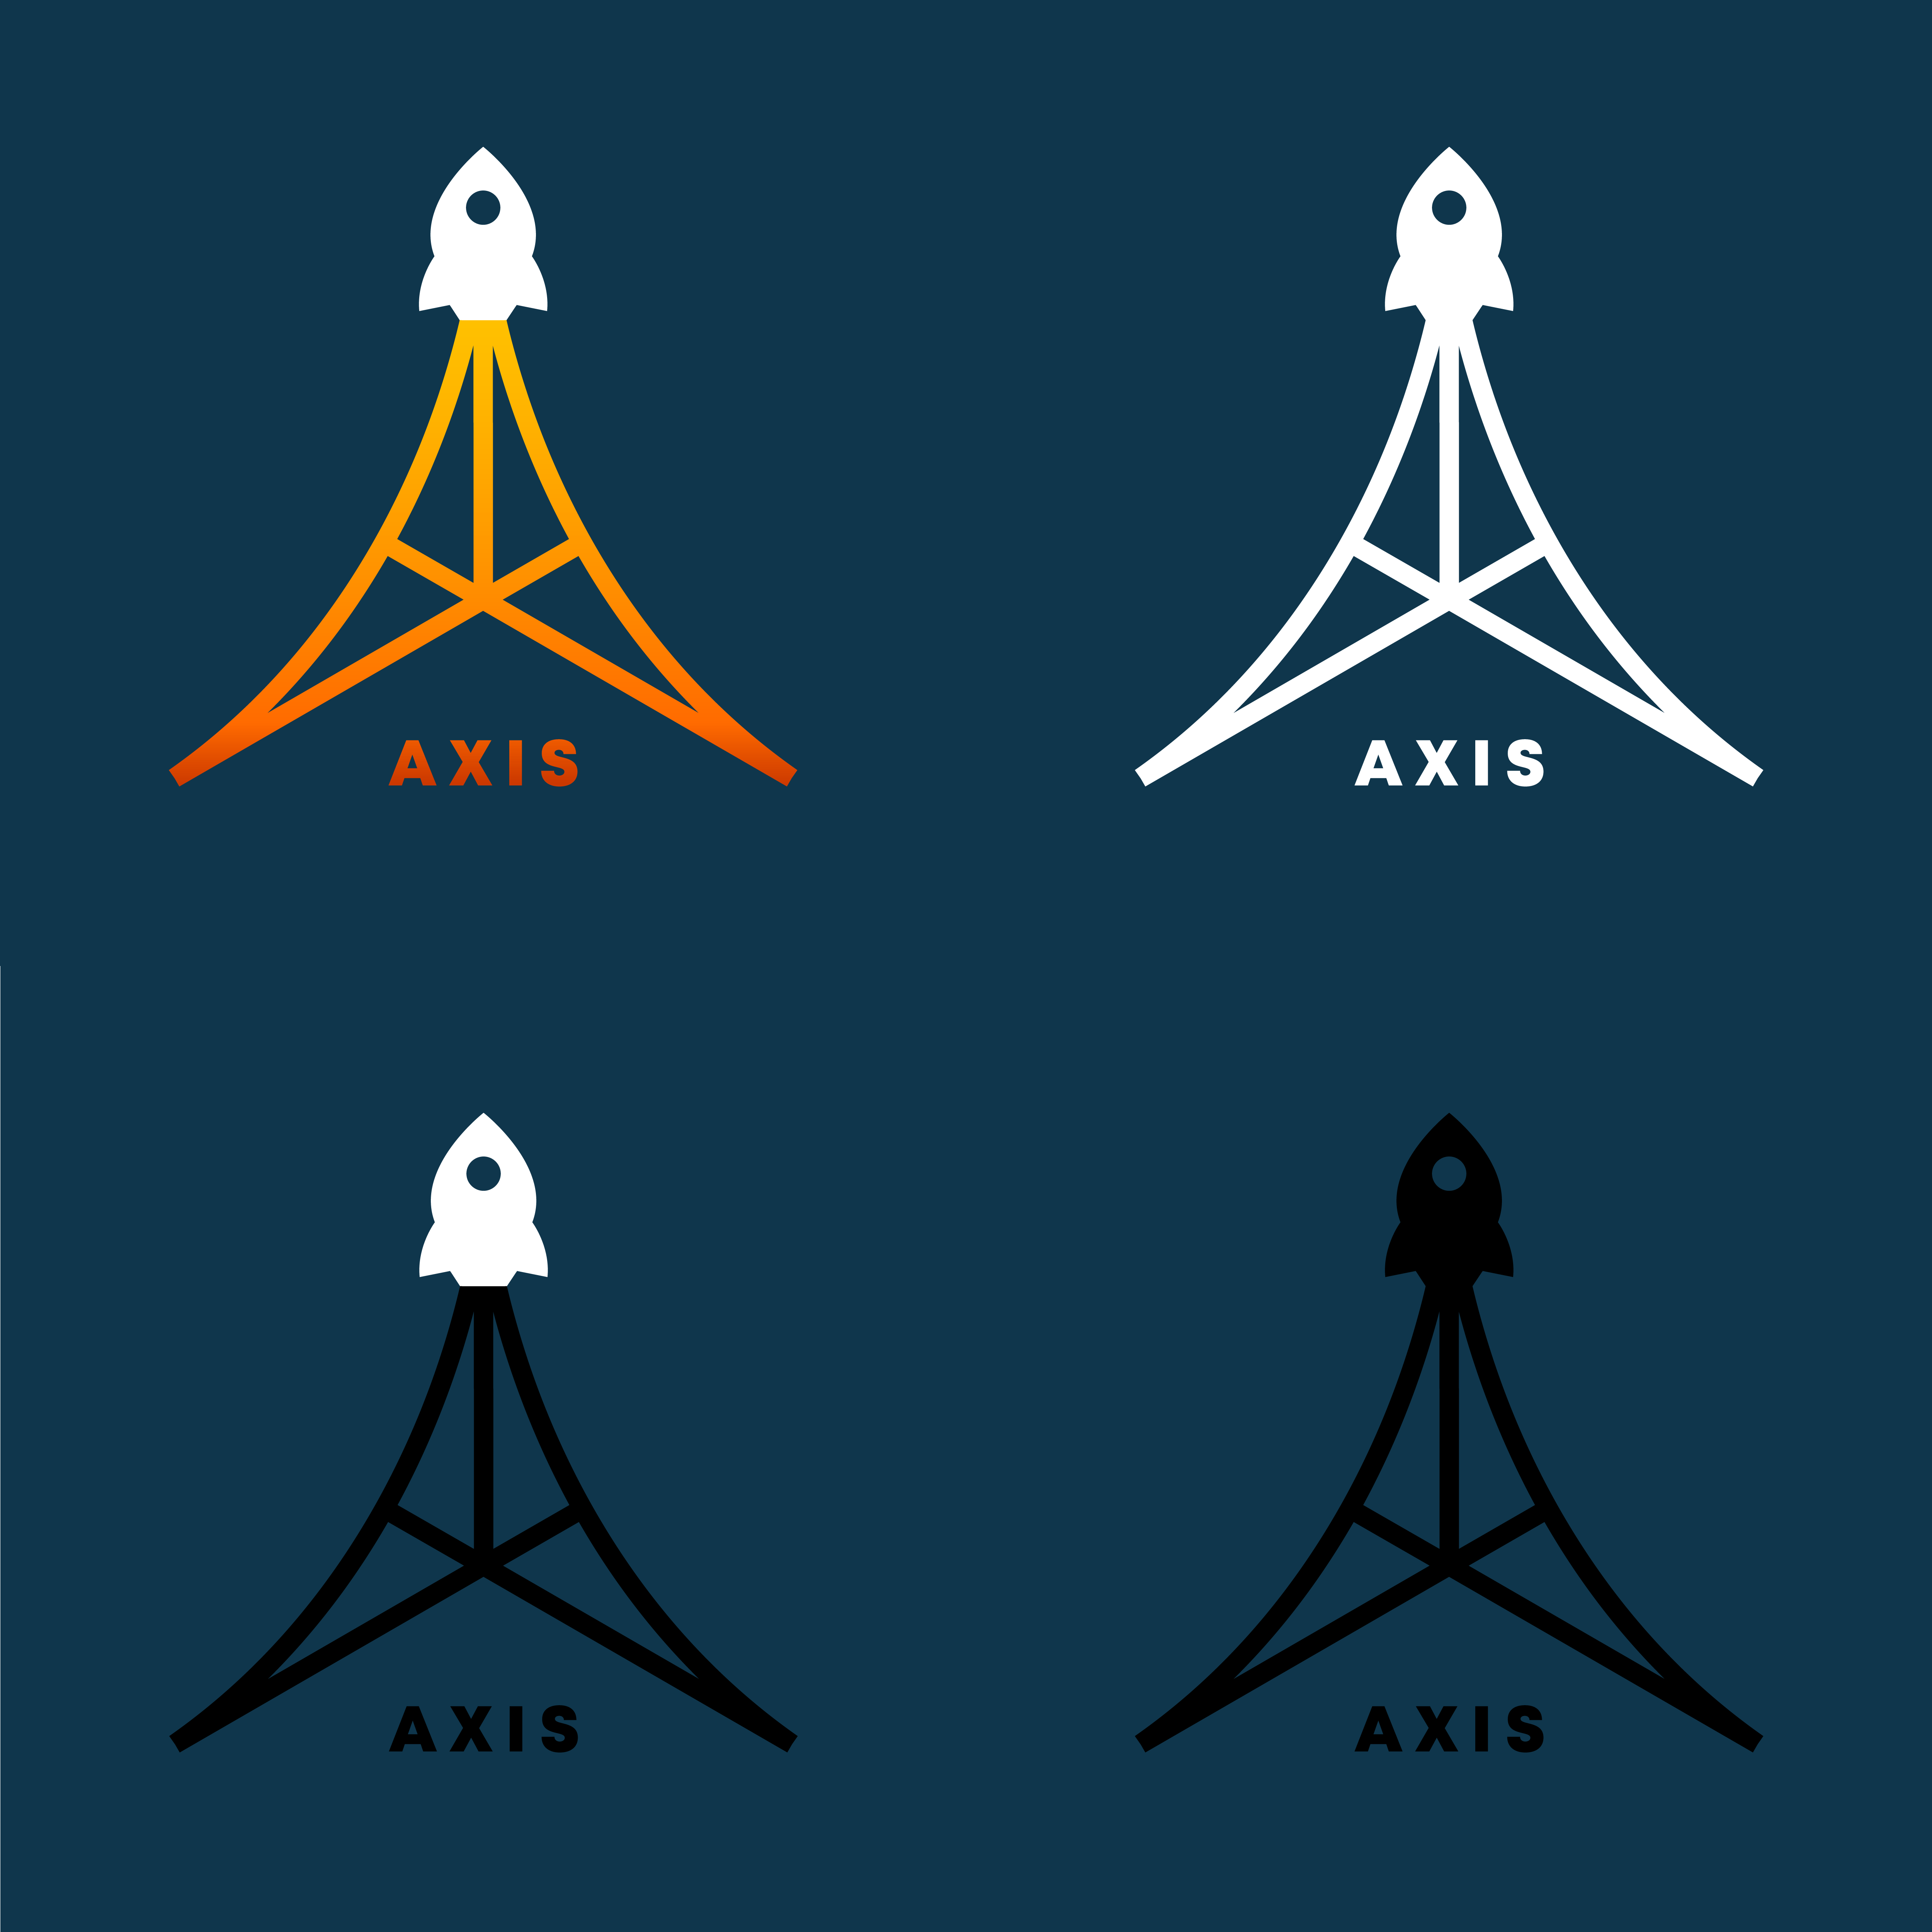 Space Company Logo - Logo for a space company called Axis #dailylogochallenge : logodesign